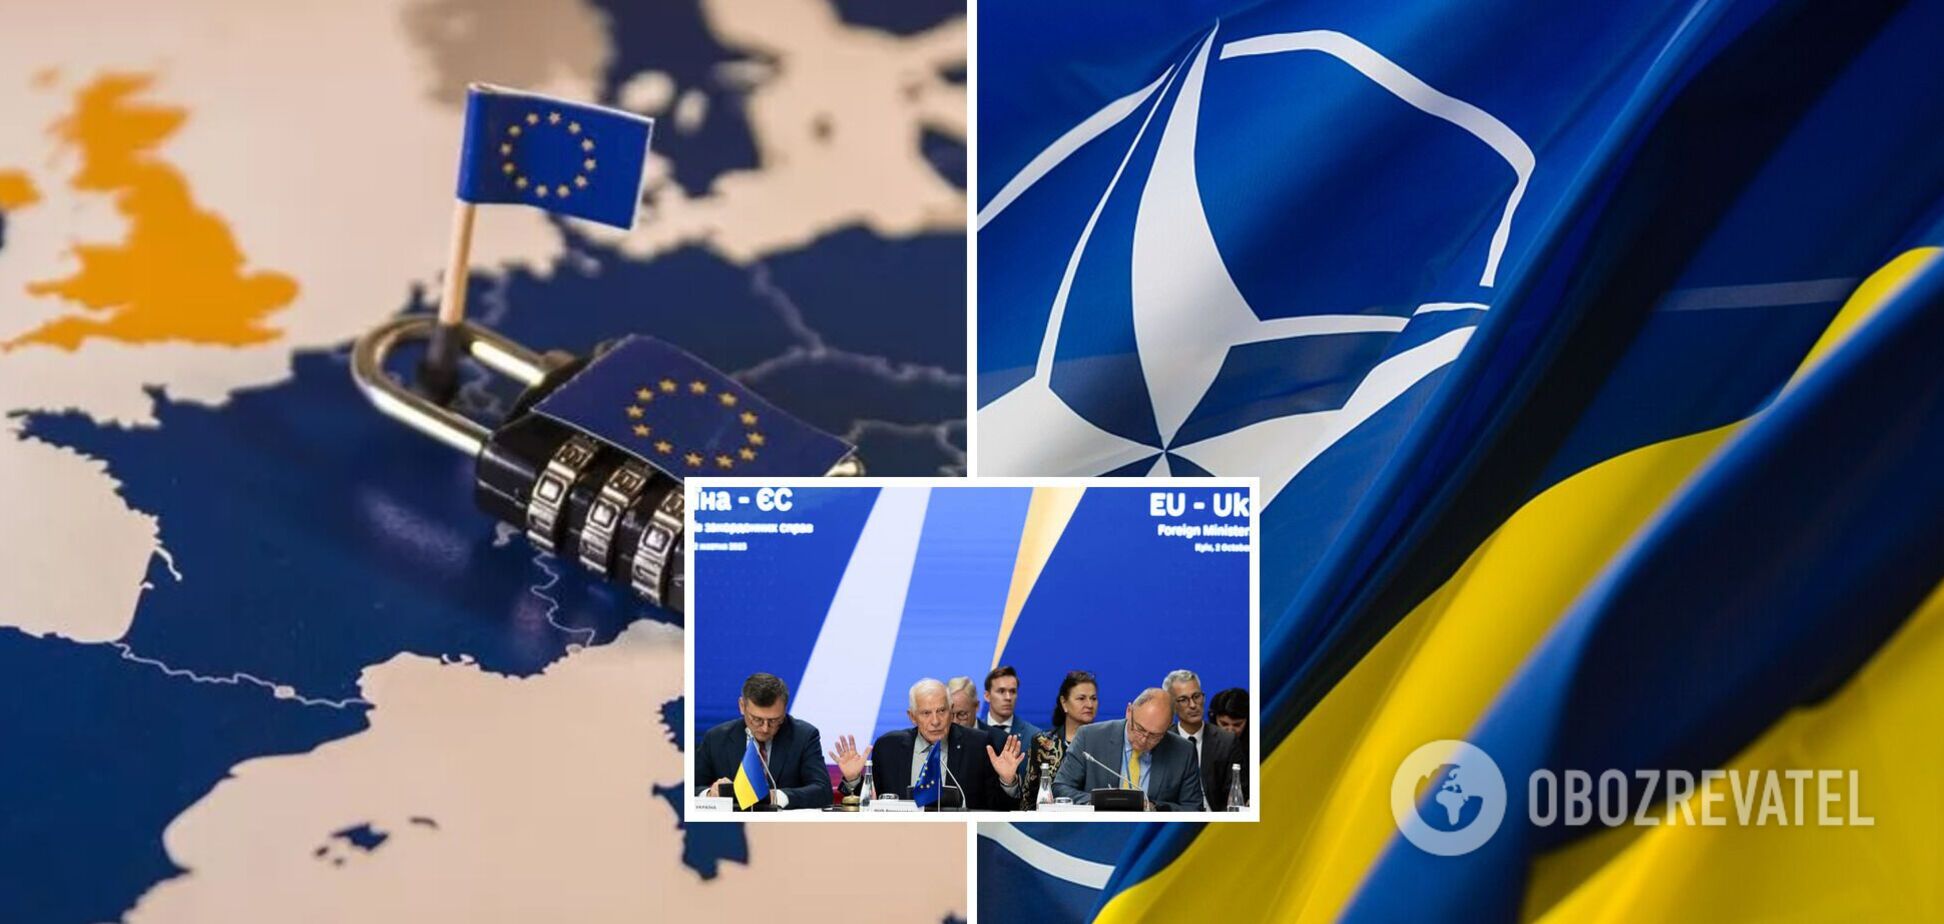 Маємо півтора року на питання членства в НАТО і ЄС, треба готуватися до складних часів. Інтерв’ю з Огризком